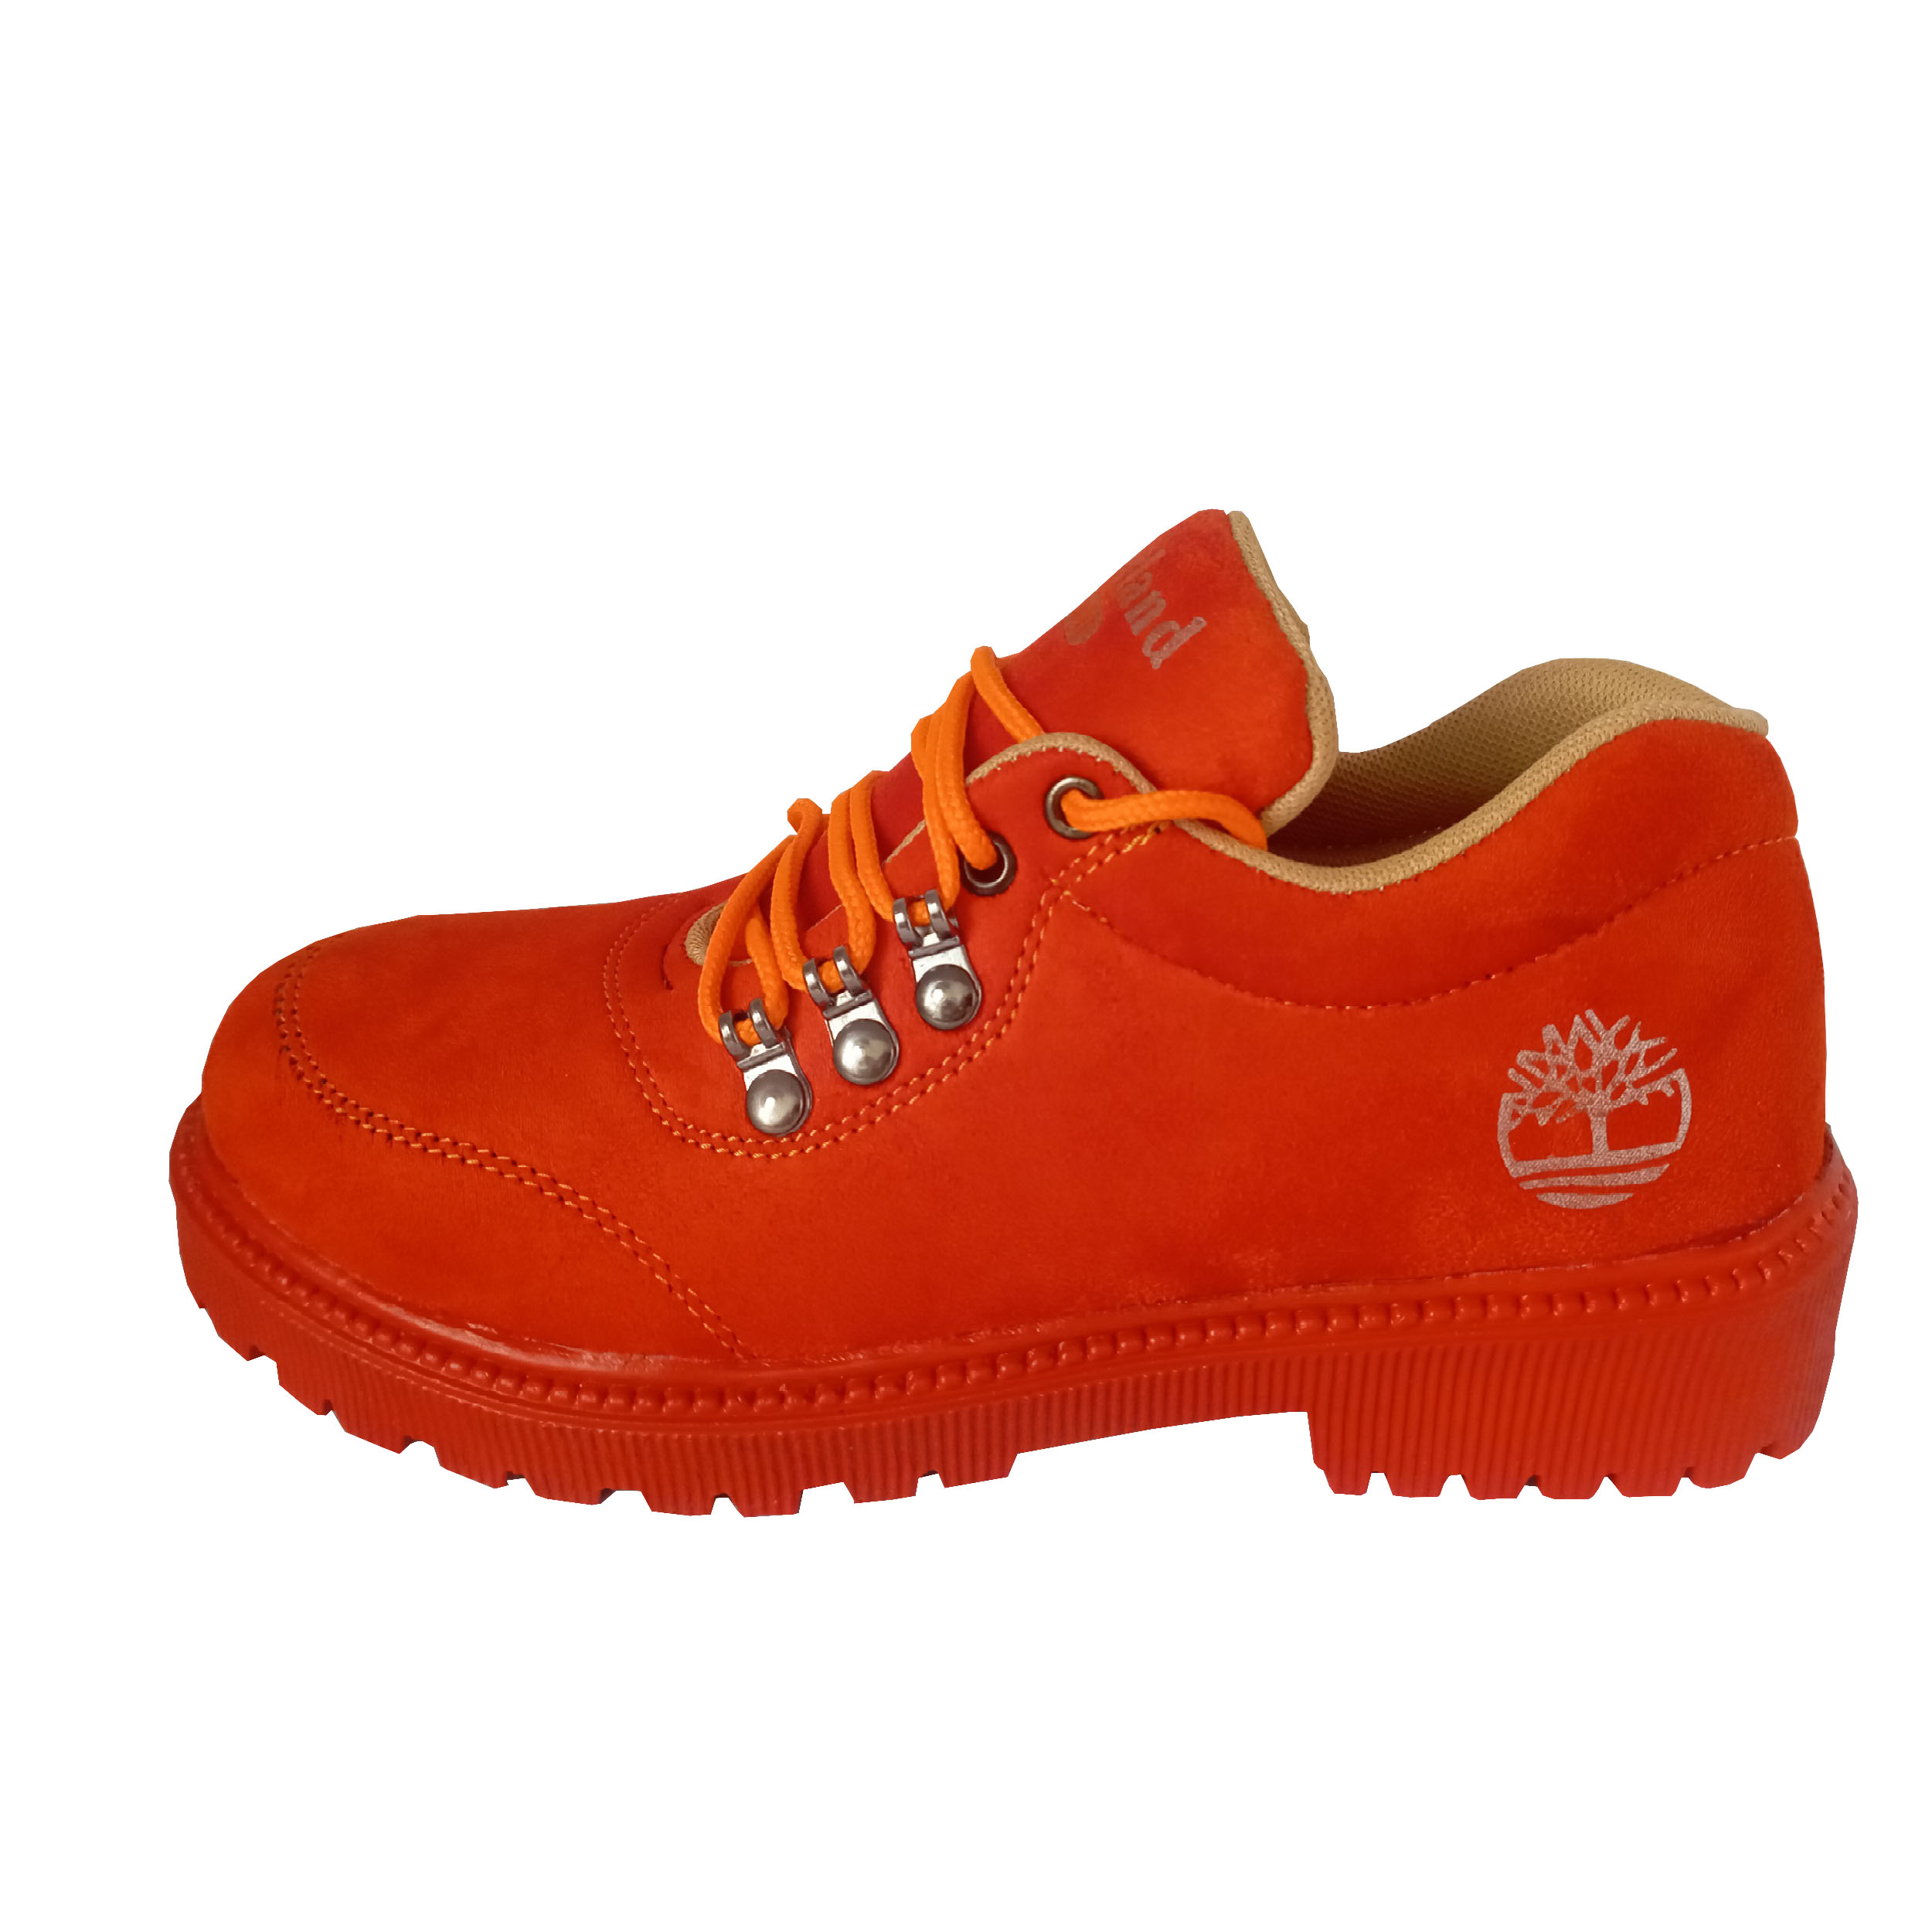 کفش زنانه مدل TM کد 001 رنگ نارنجی